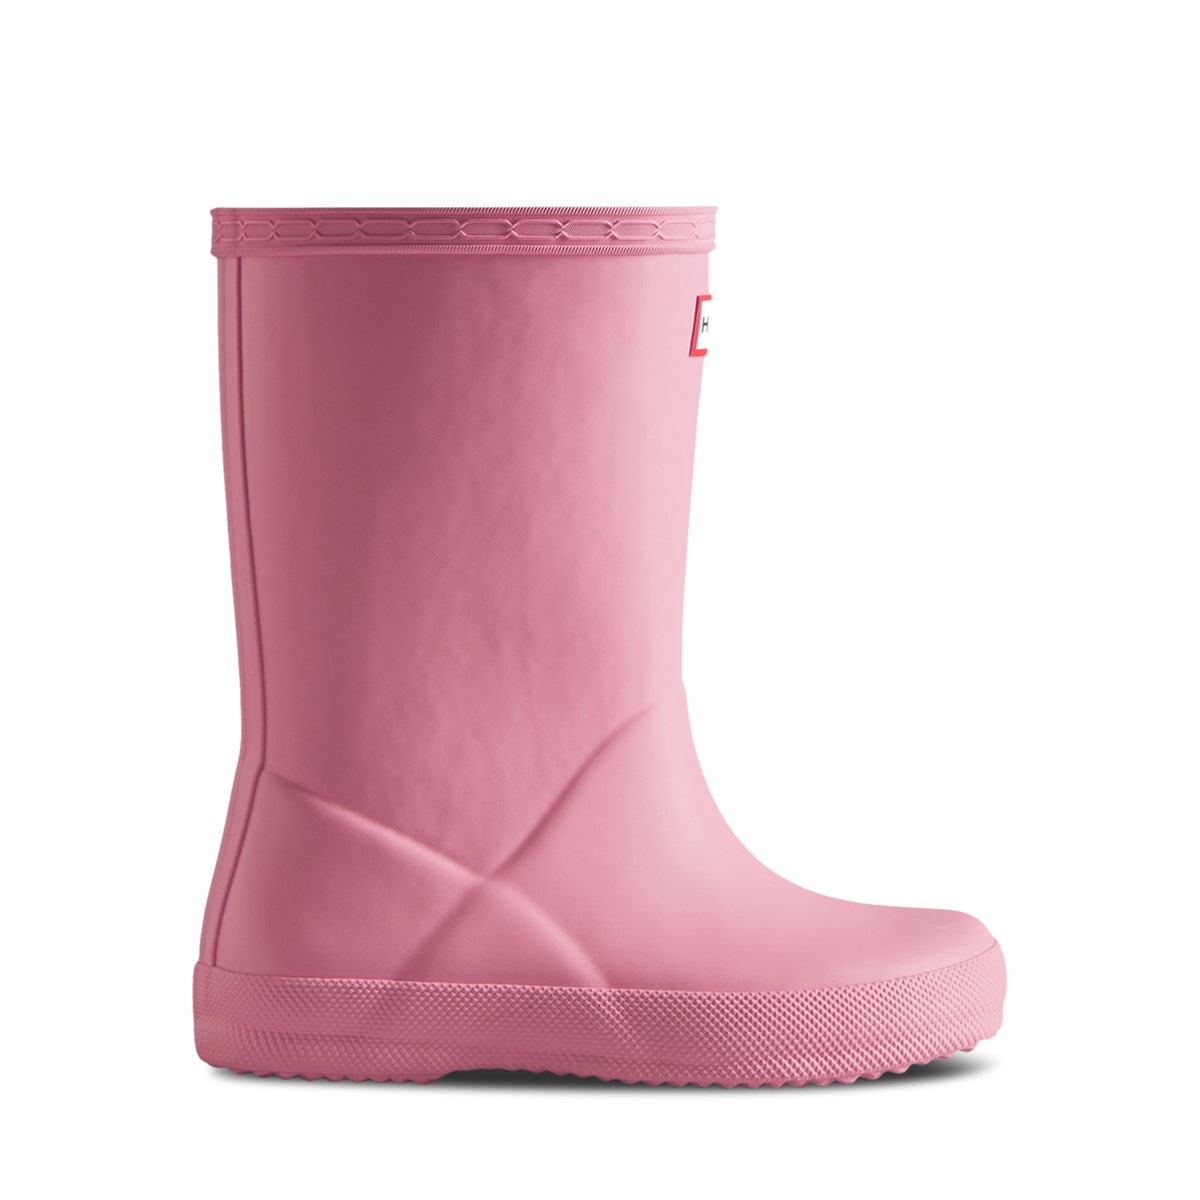 Premières bottes de pluie classiques roses pour jeunes enfants